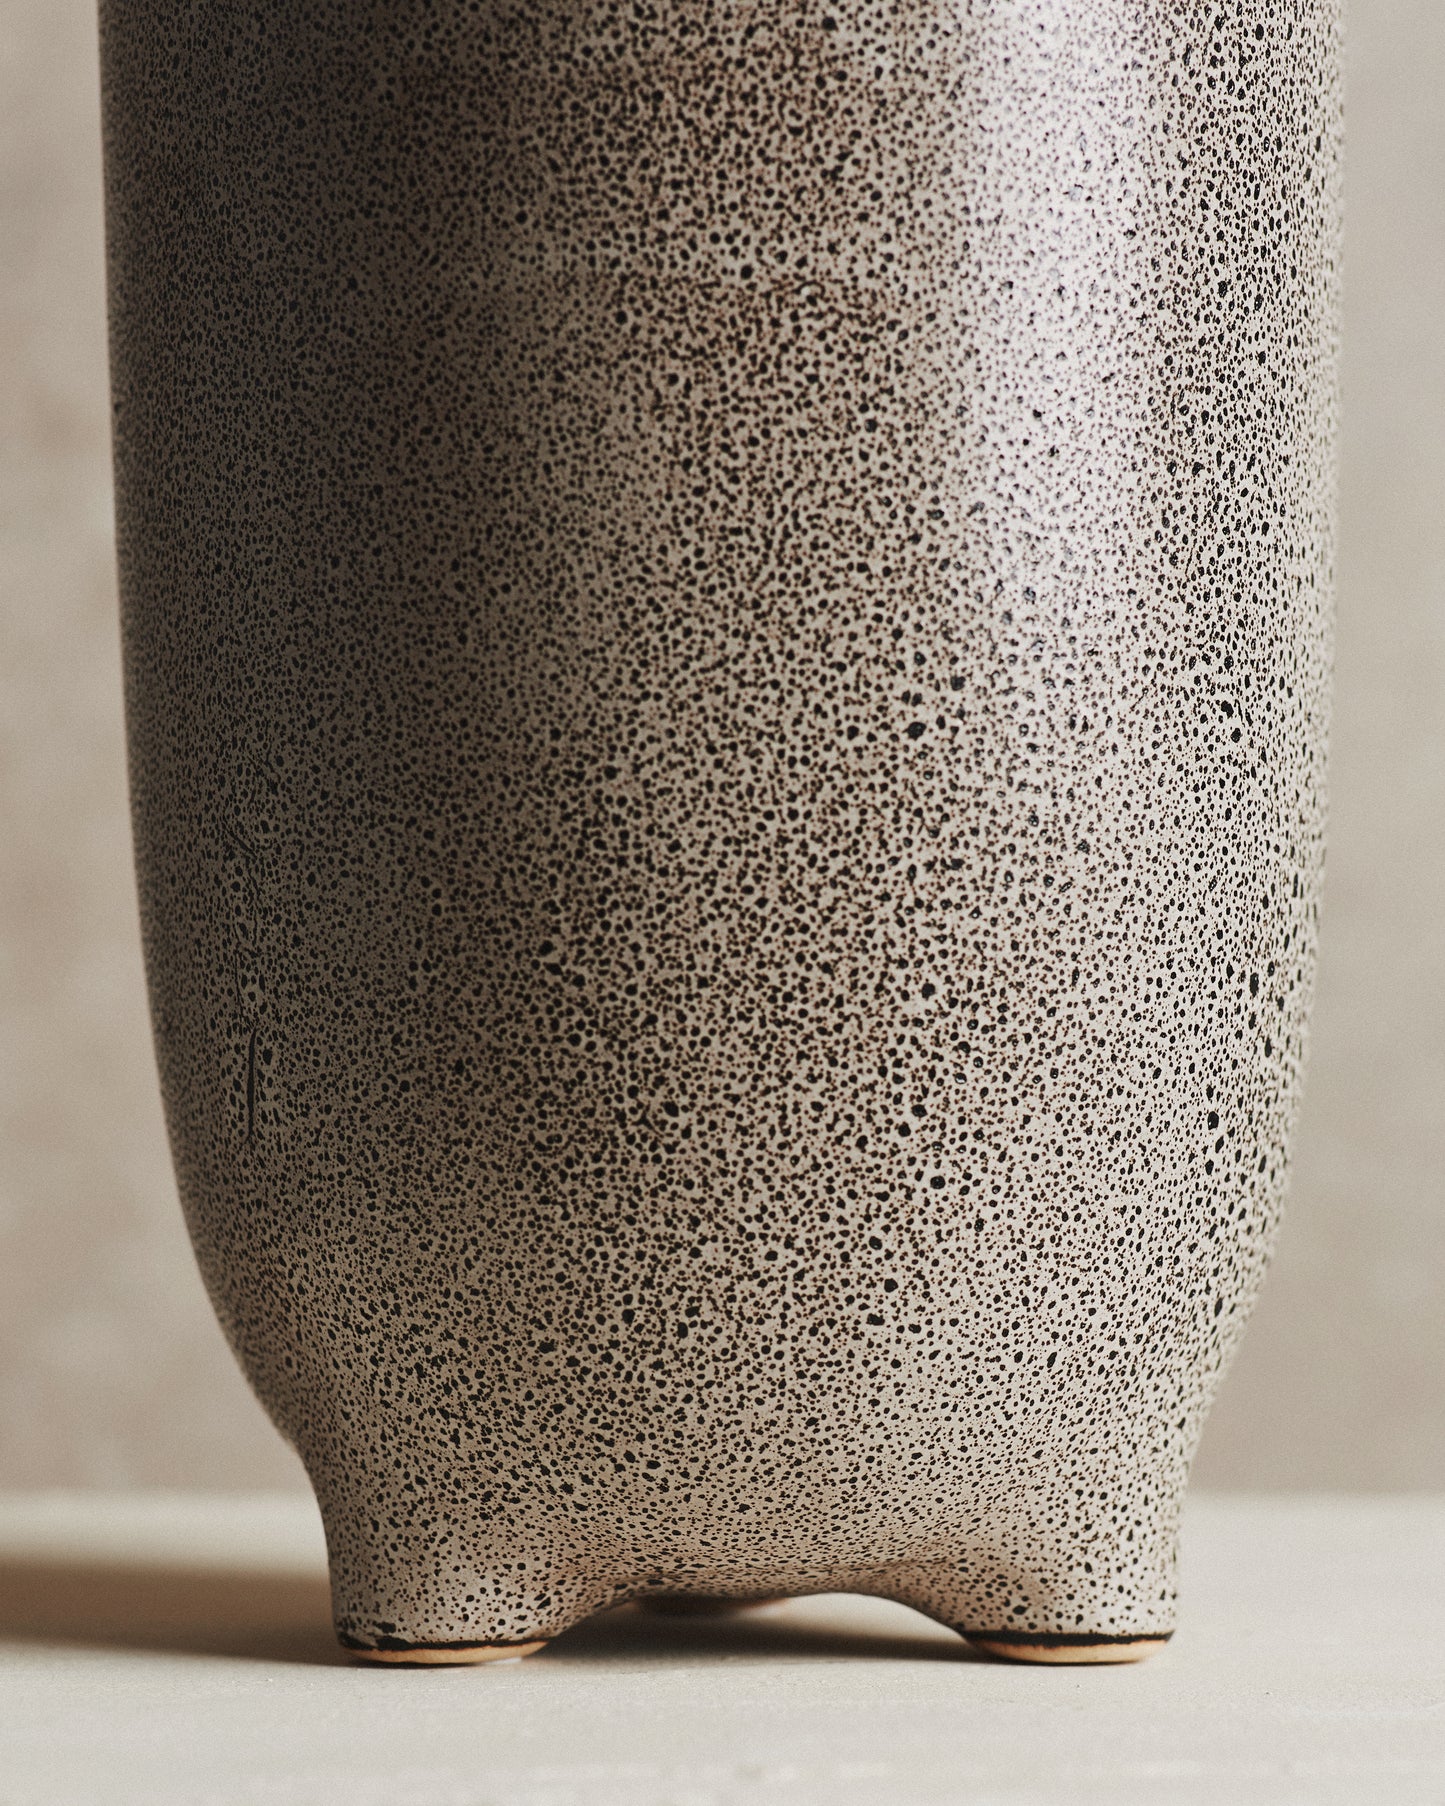 Sern Speckle Vase | Large